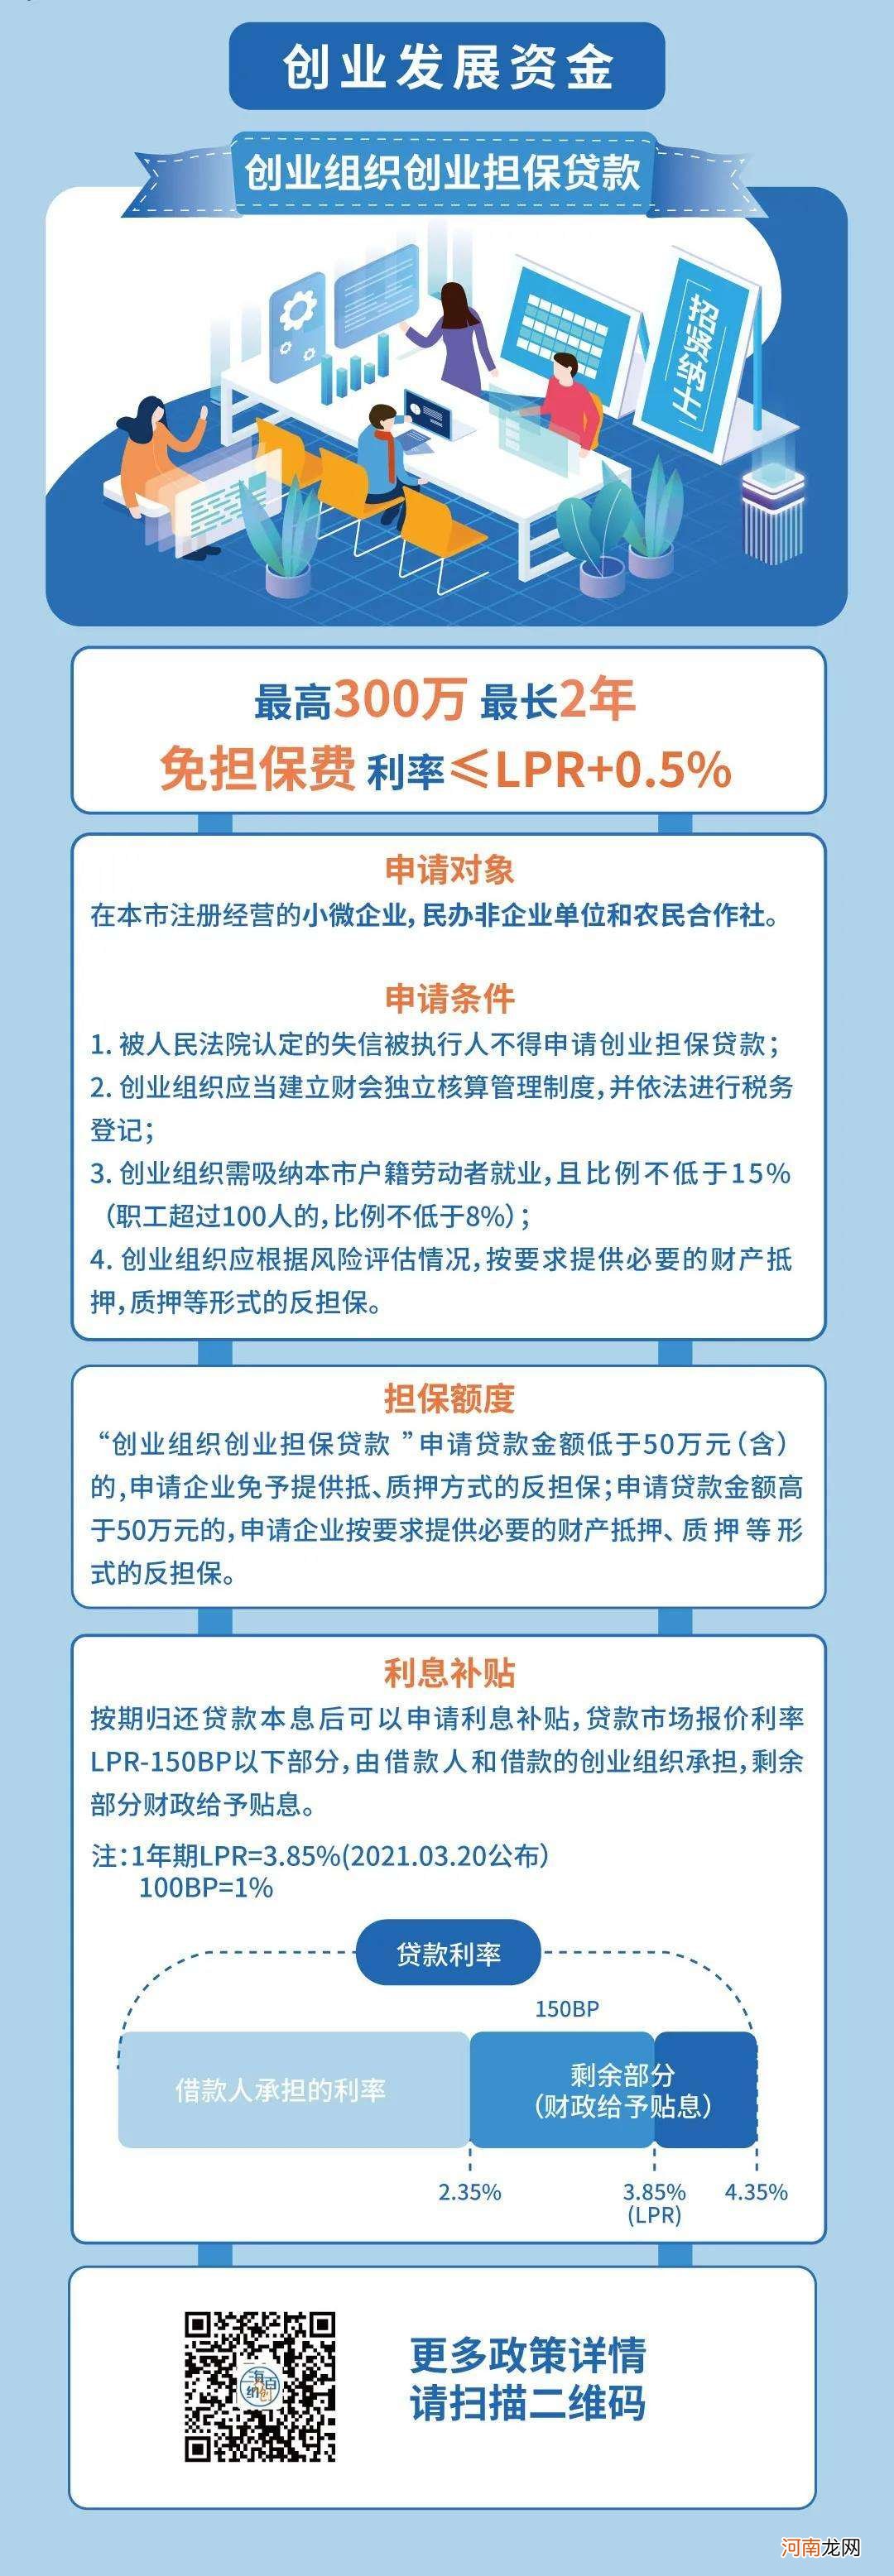 上海创业扶持地址 上海创业公共服务平台